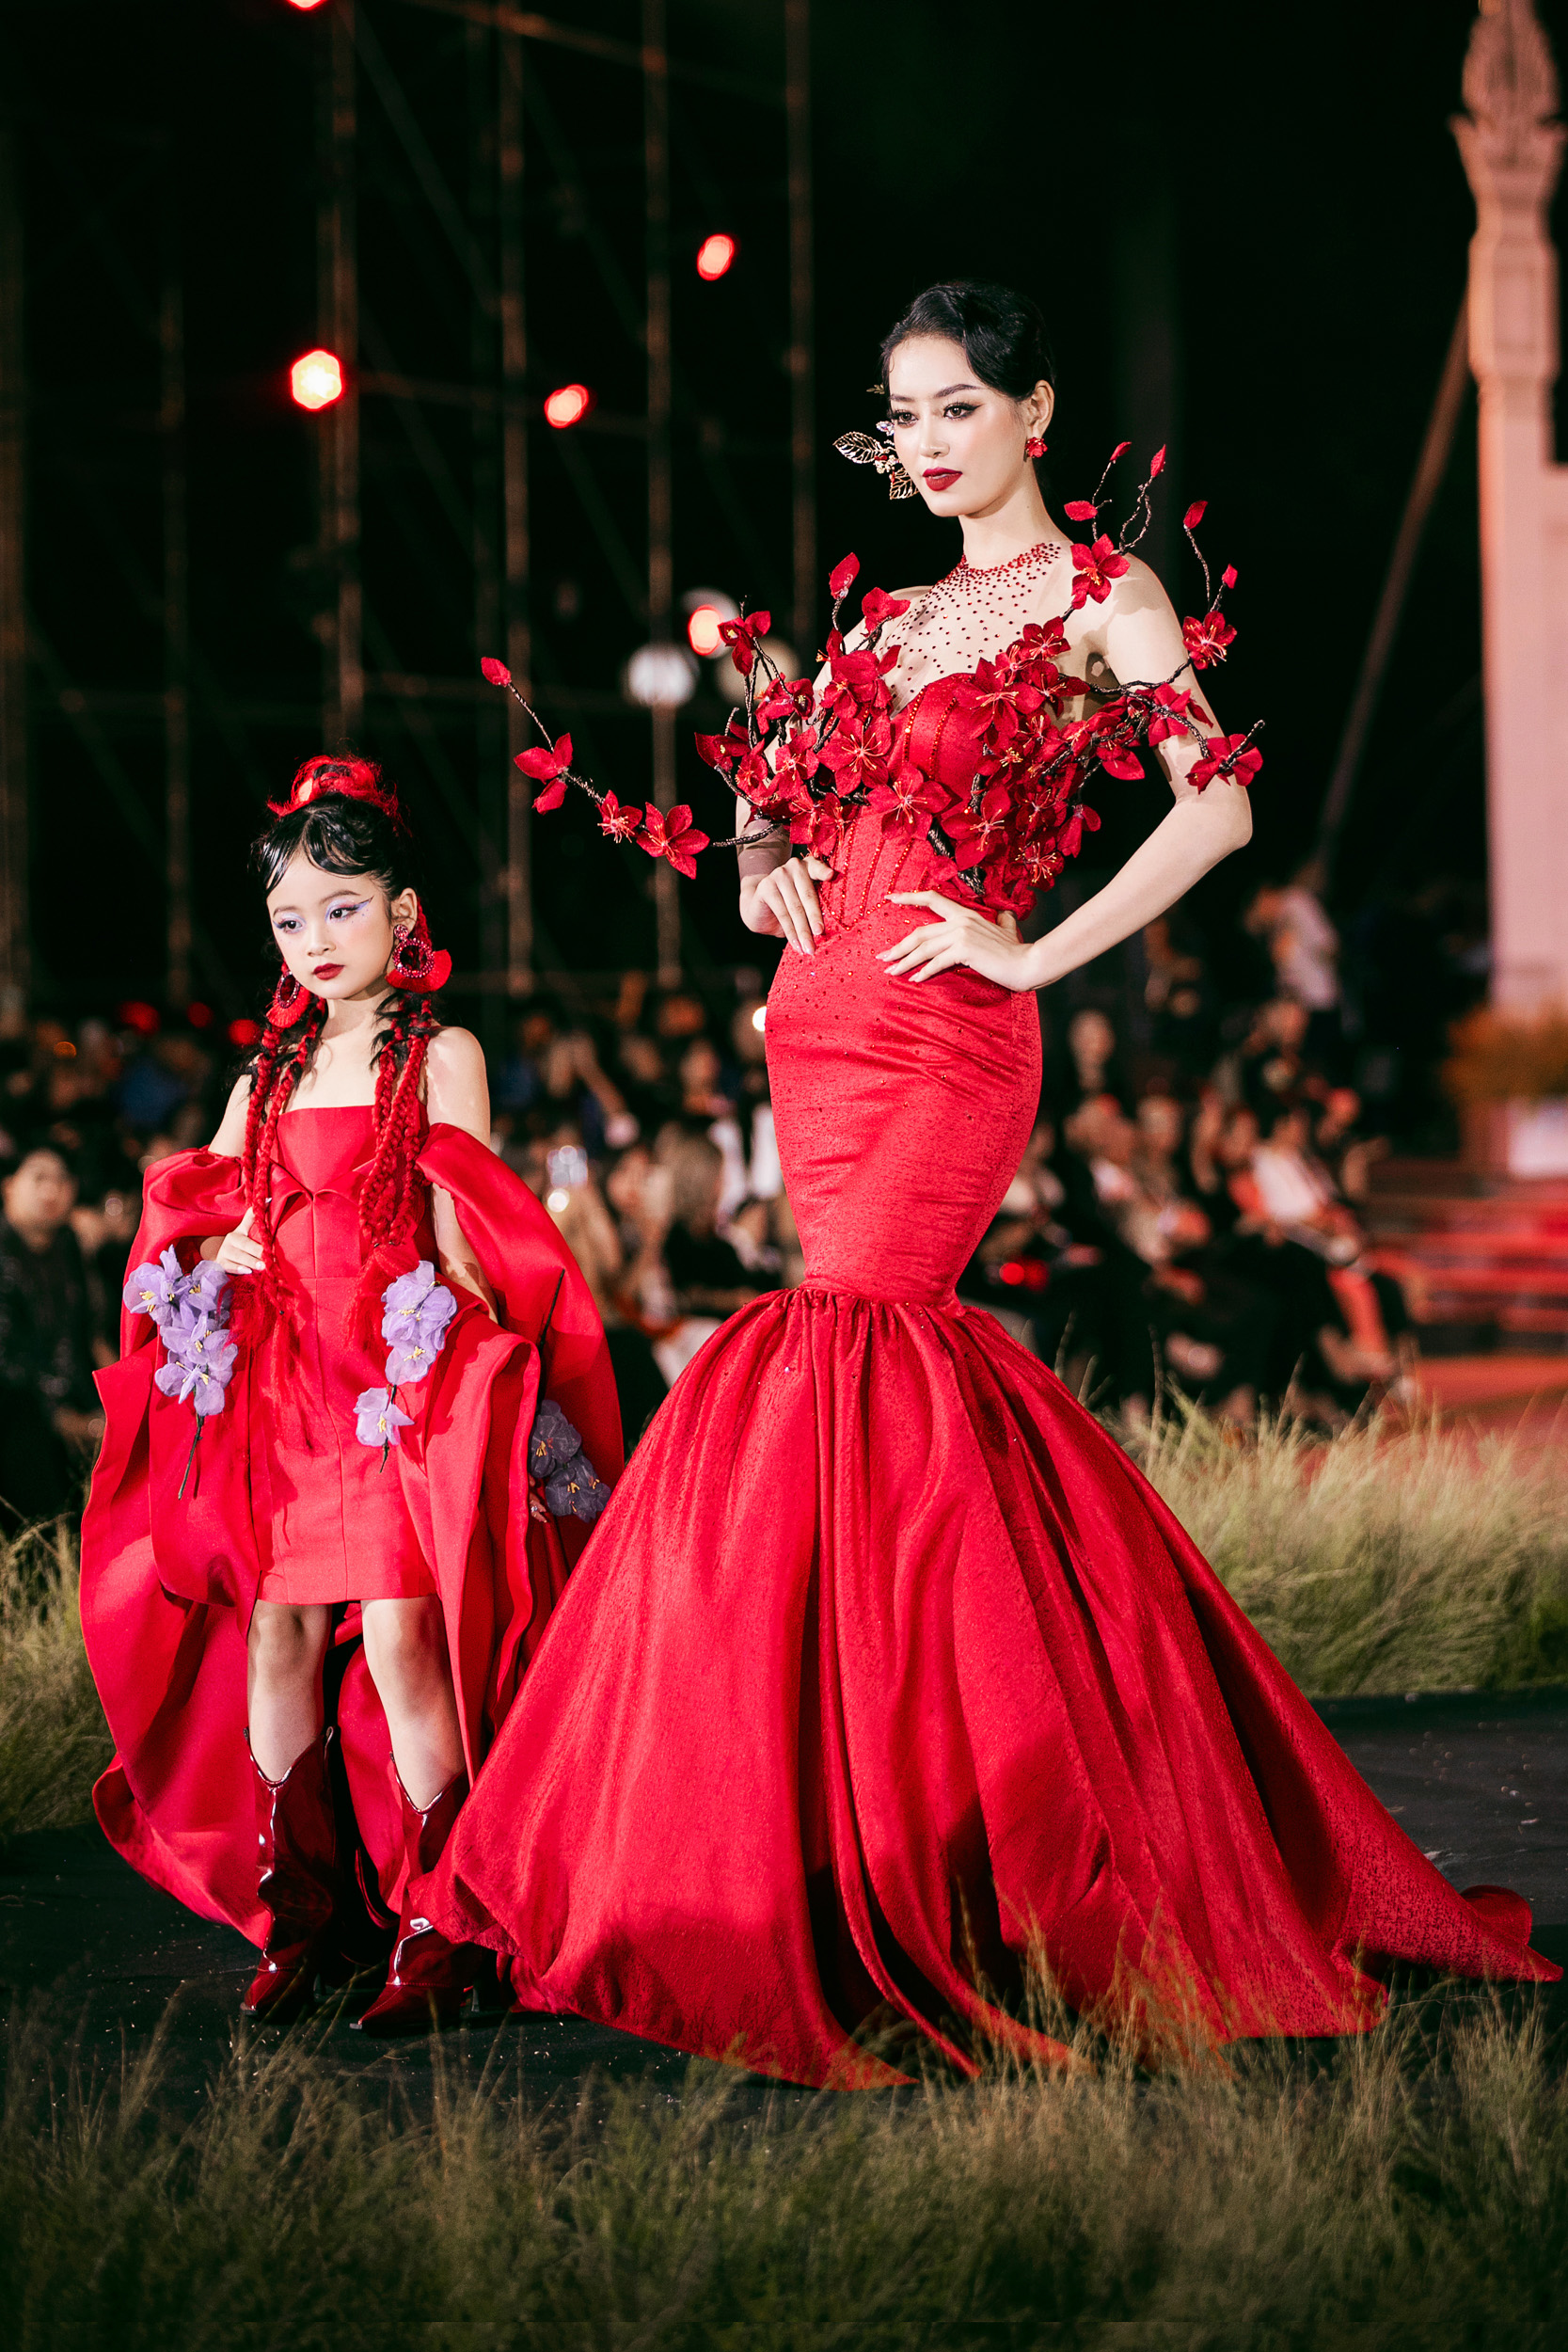 Hoa hậu Tiểu Vy, Bảo Ngọc cùng làm Vedette cho BST Ký họa quê hương - Ảnh 7.